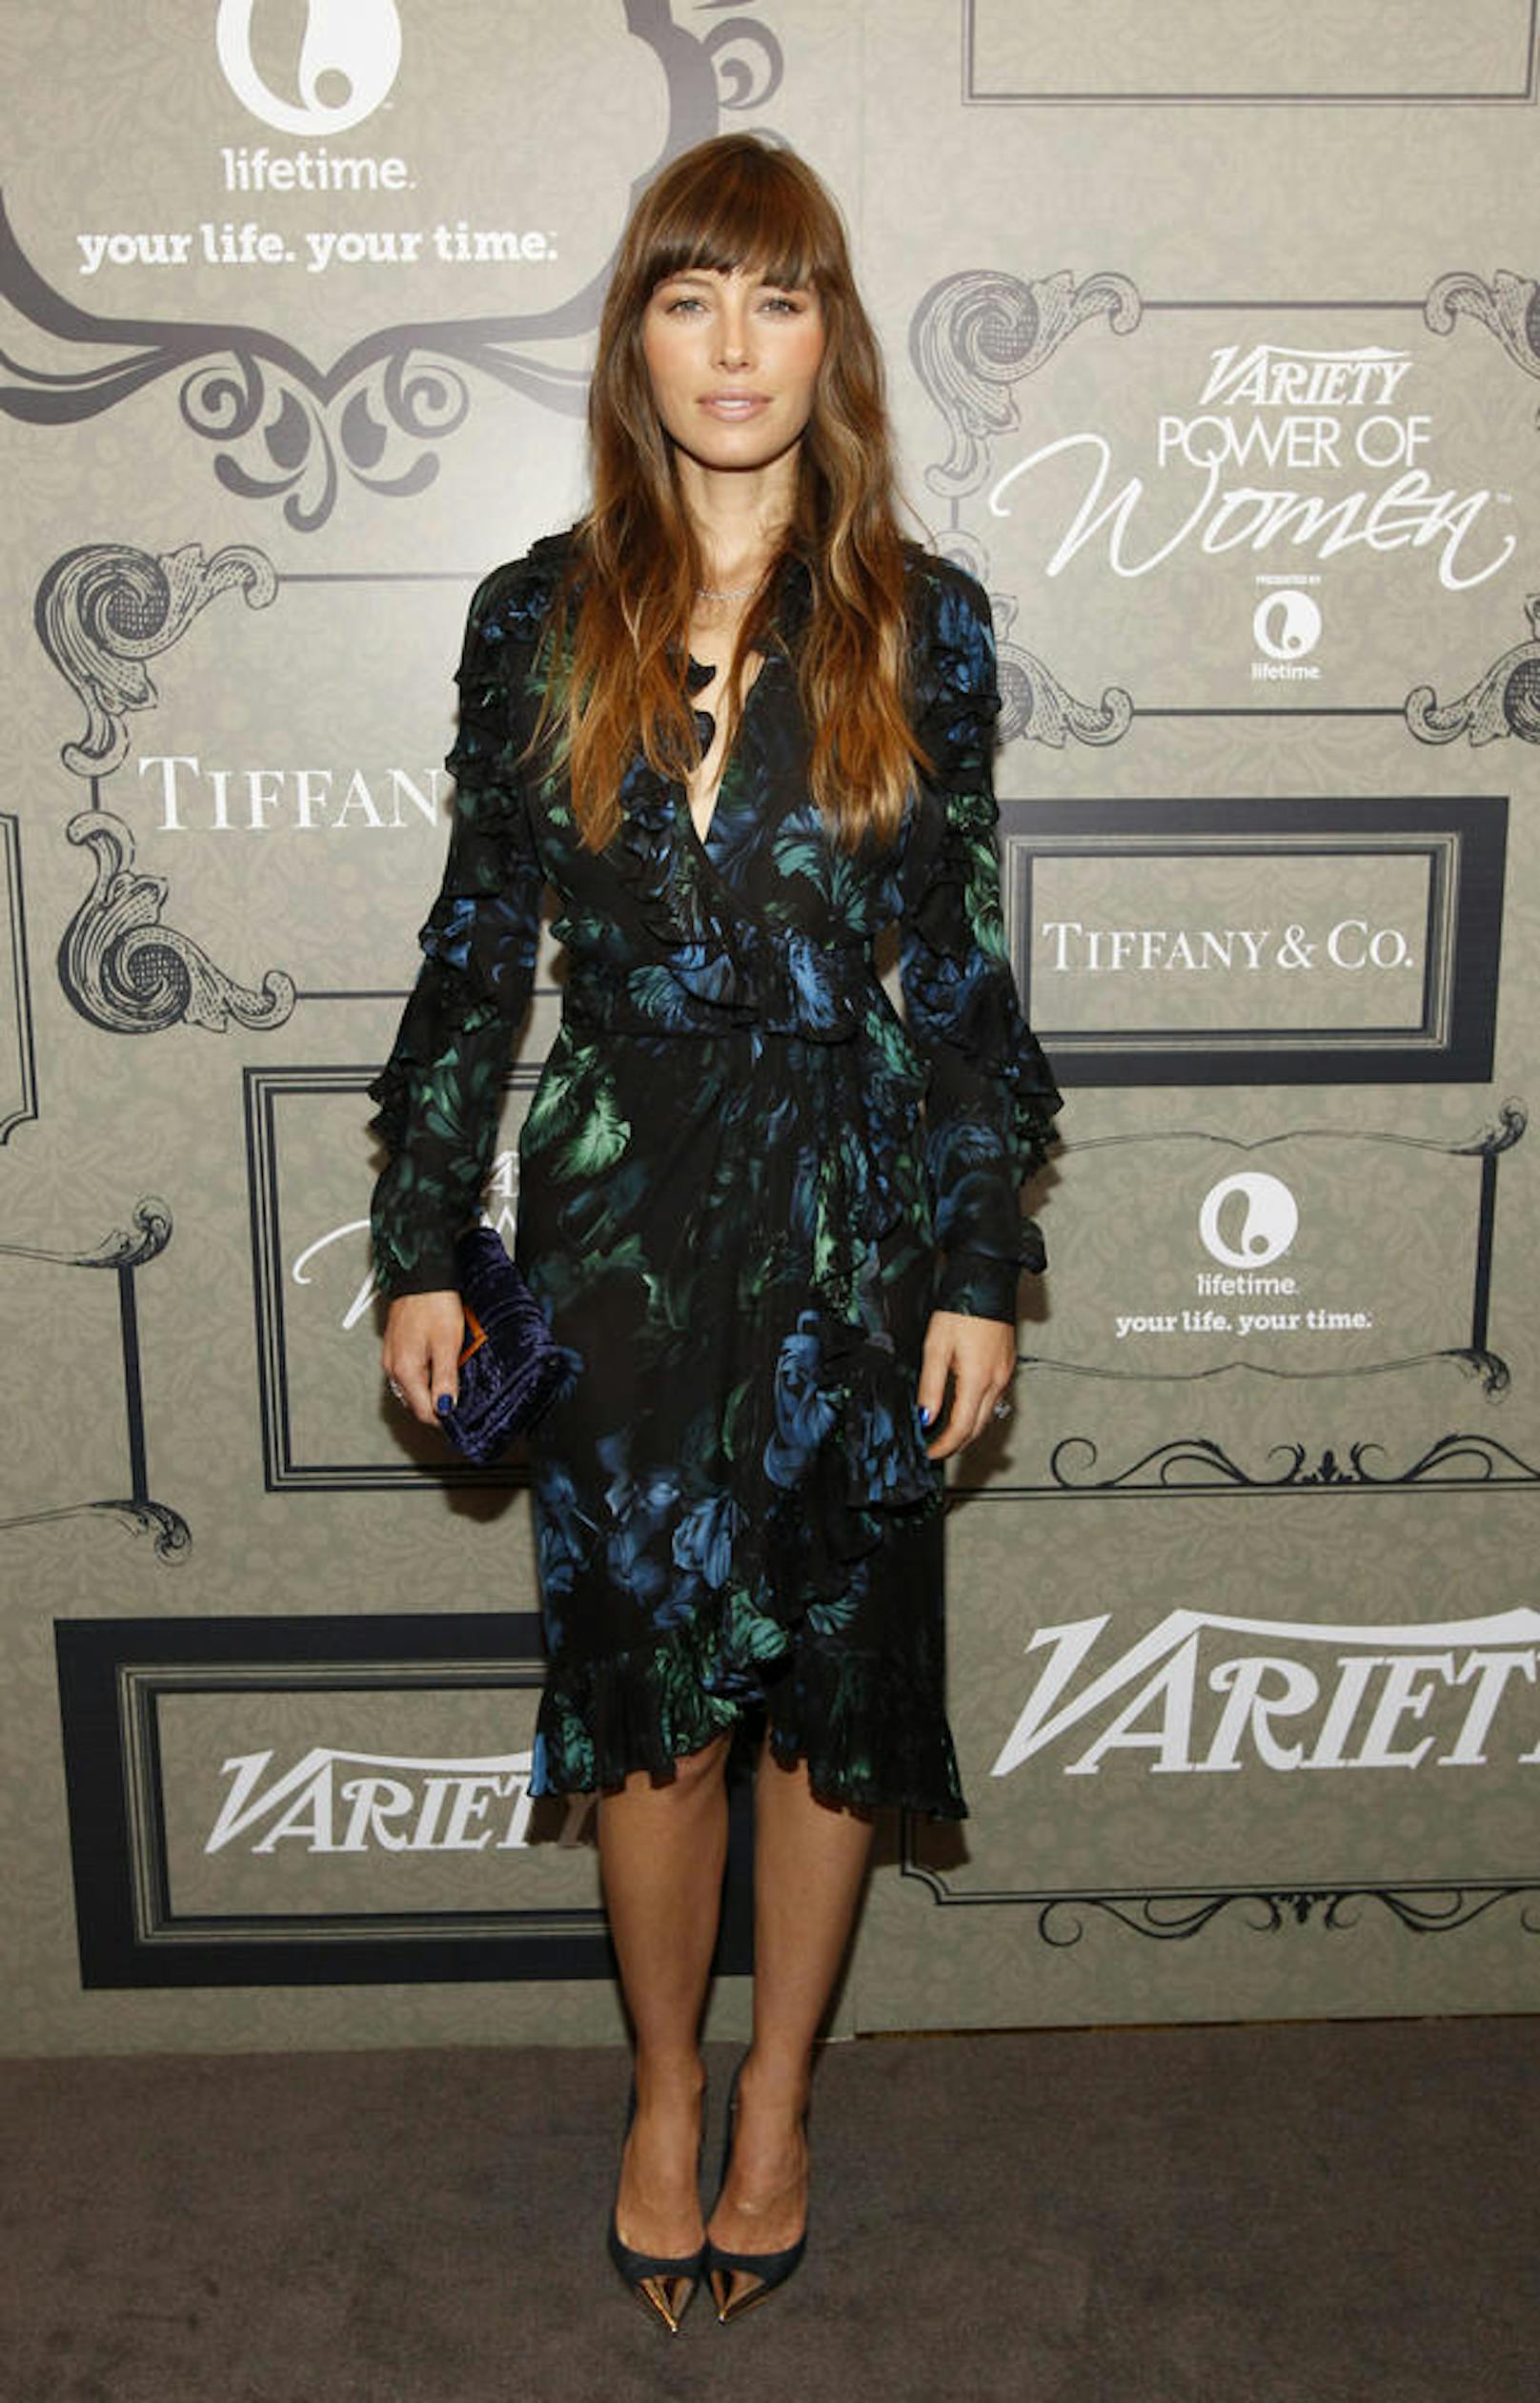 Schauspielerin Jessica Biel beim Variety-Event "Power of Women"